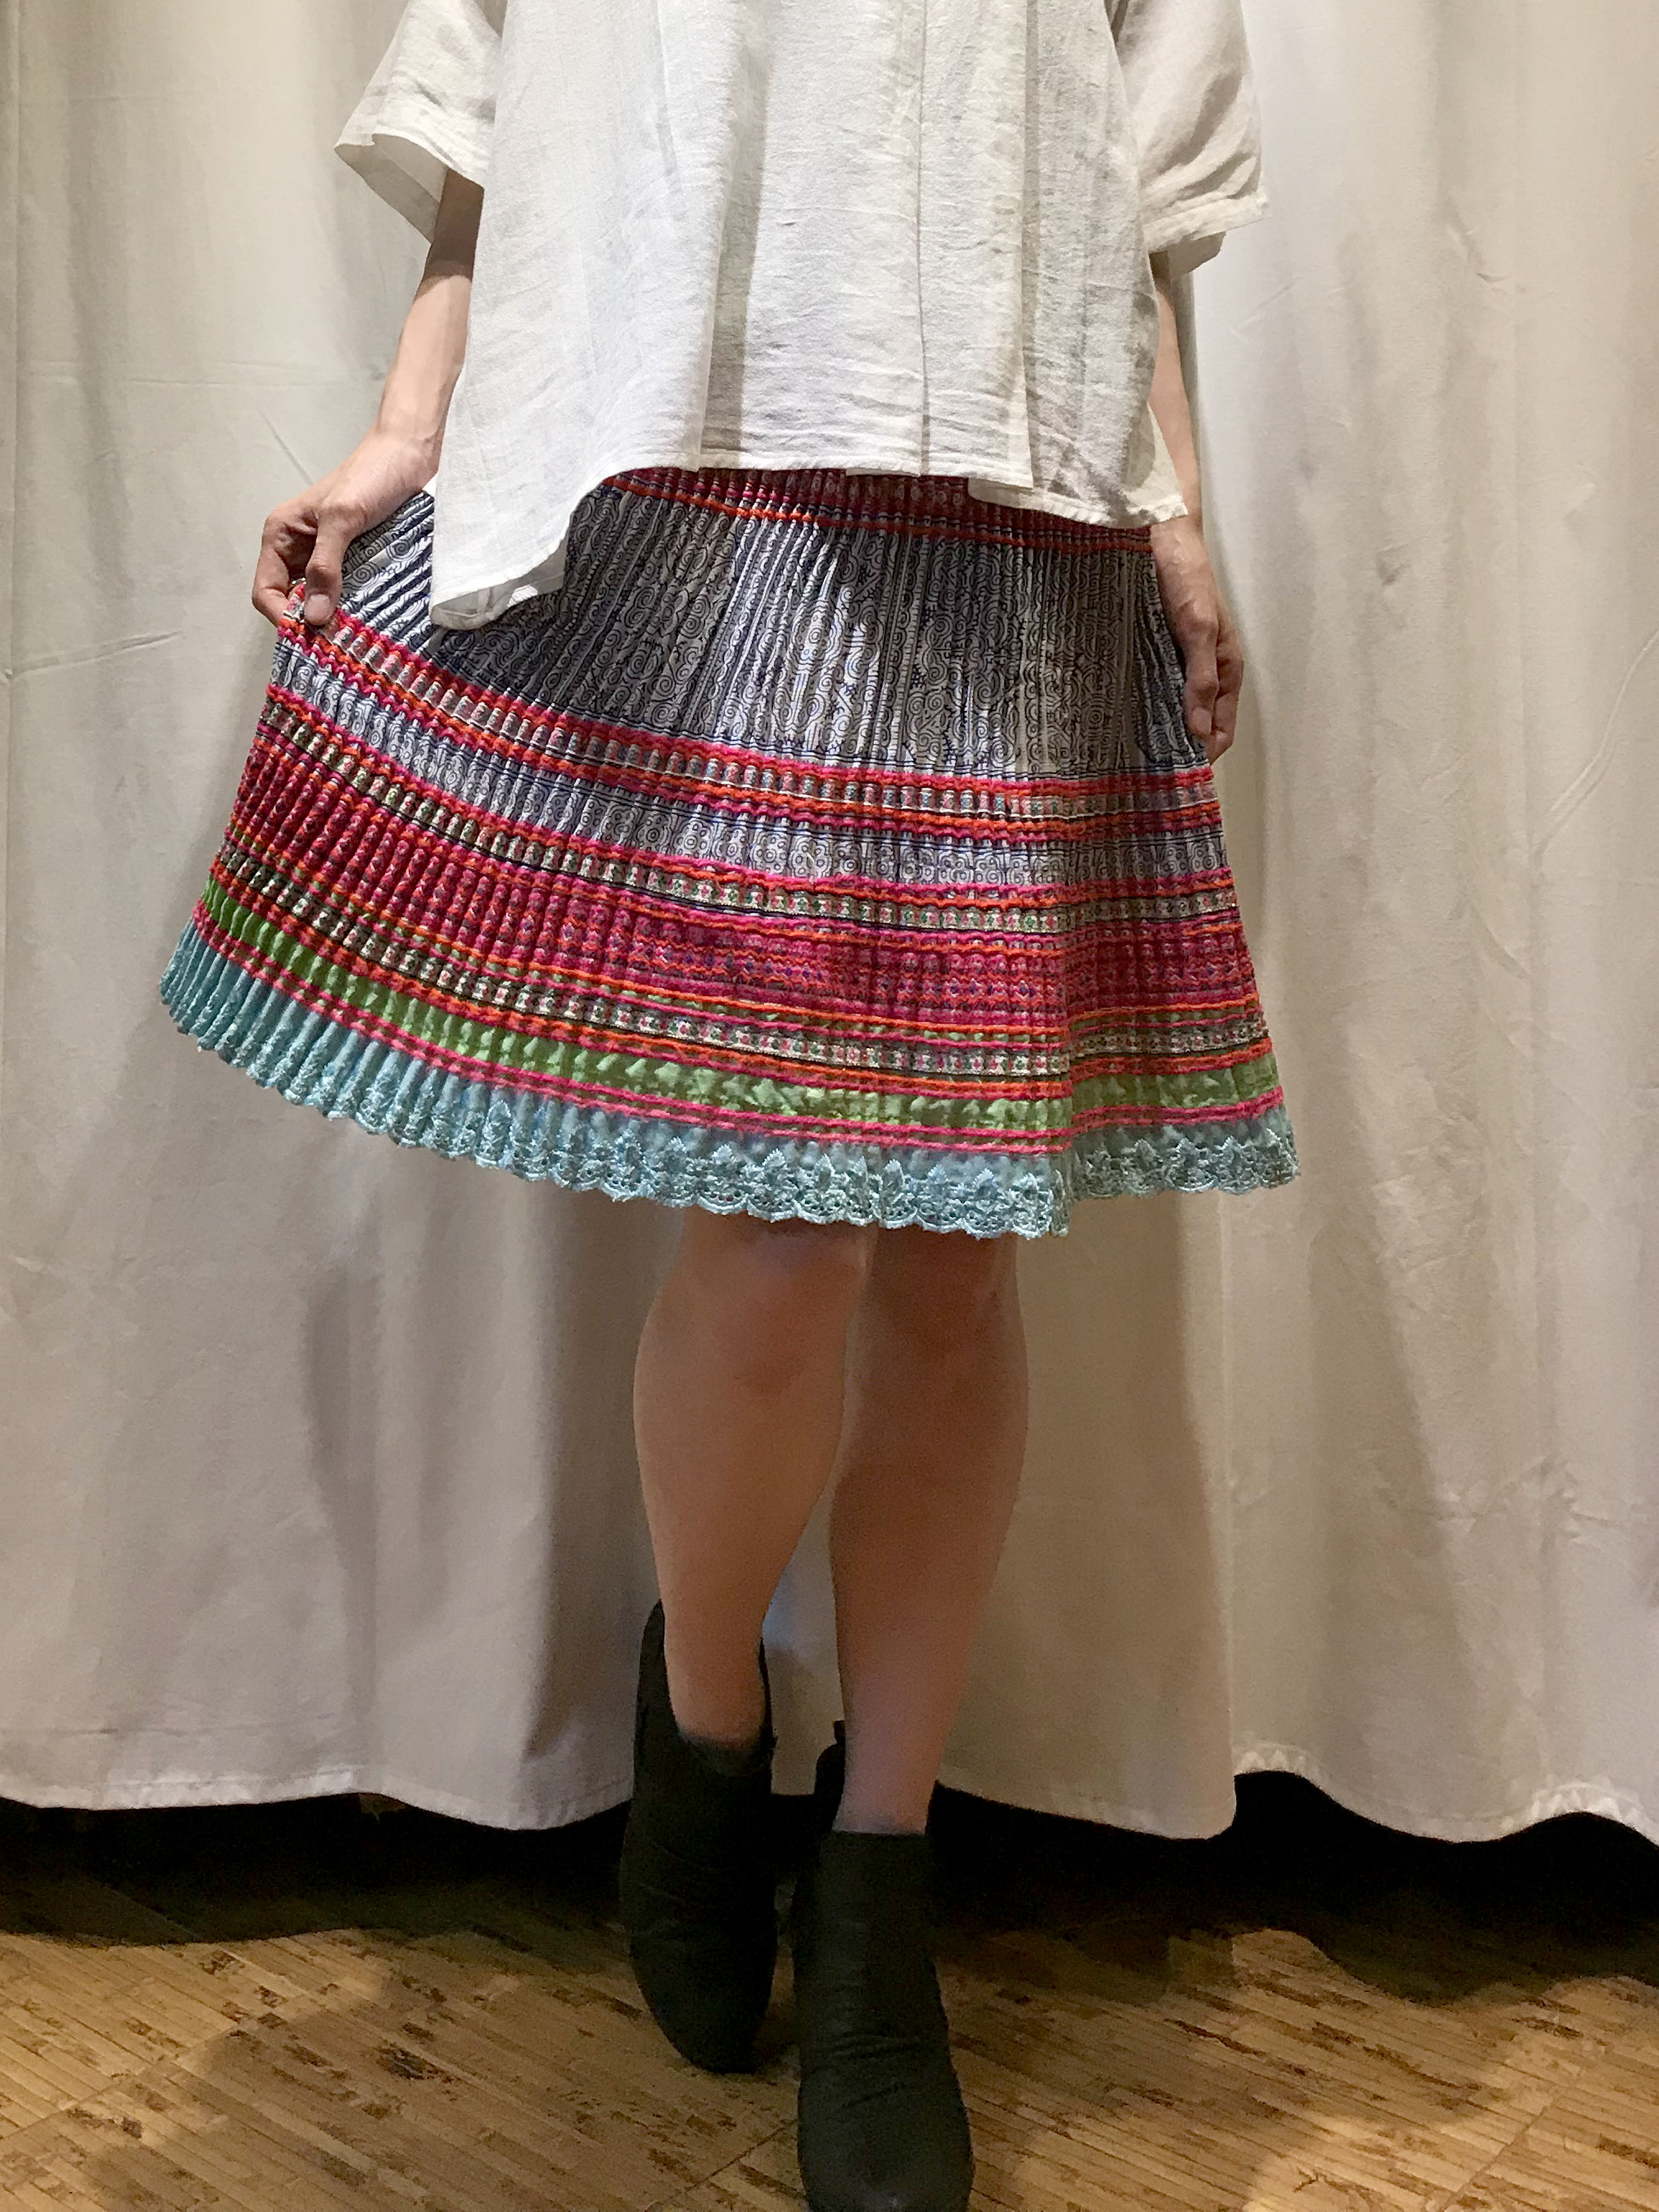 モン族 手刺繍 ミディアムプリーツスカート ピンク Rain Forest 大人のアジア服と雑貨